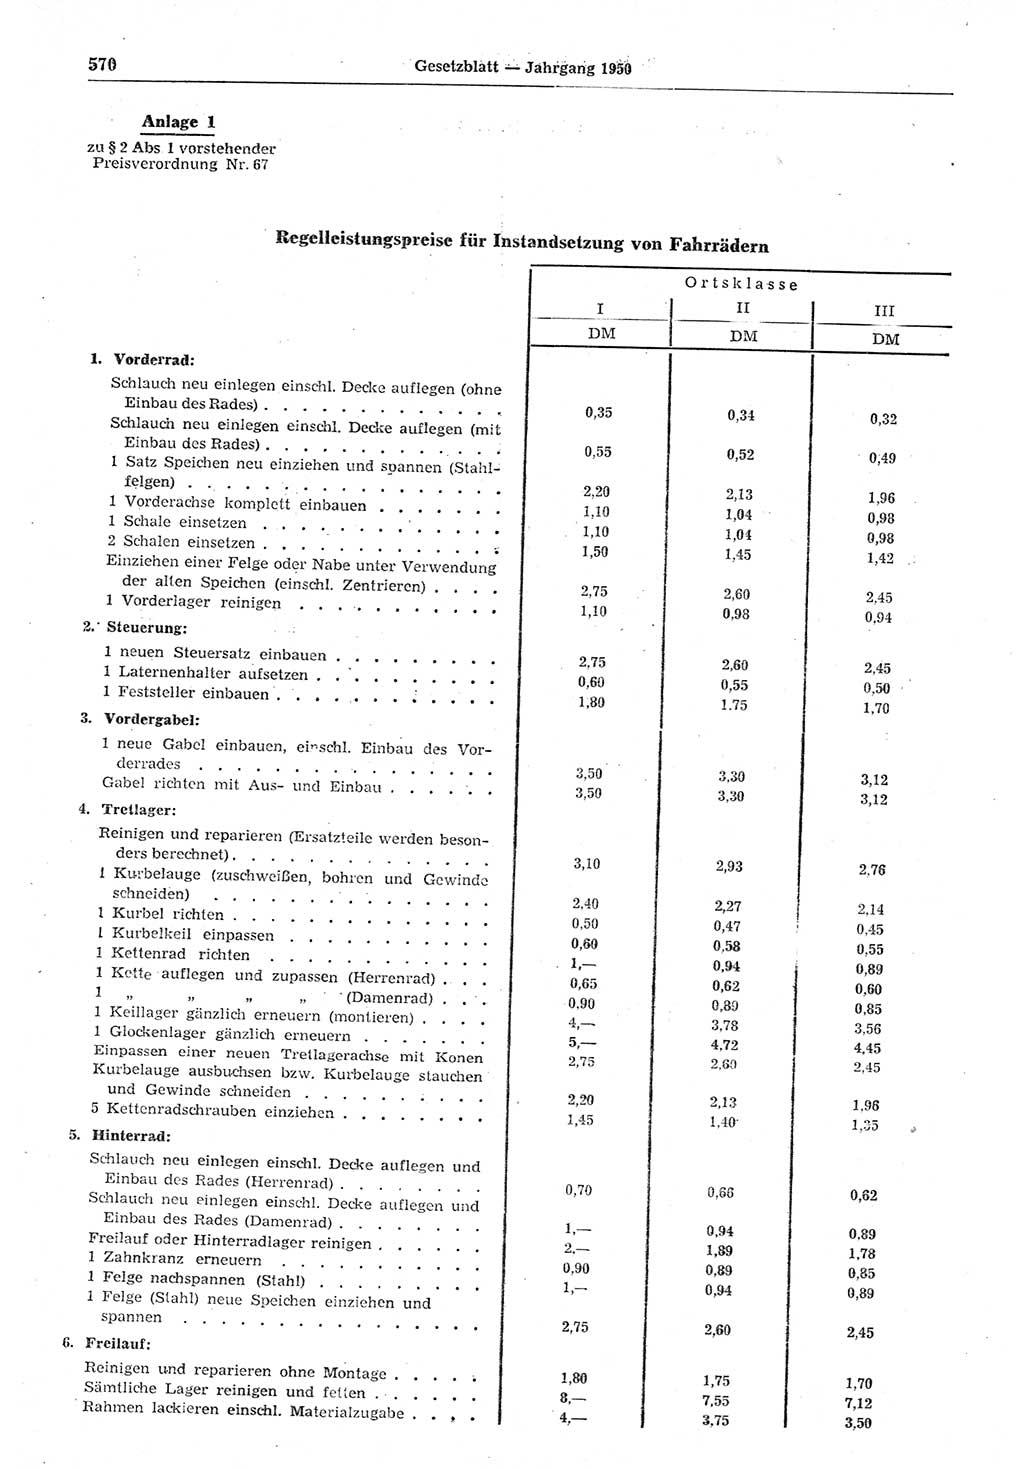 Gesetzblatt (GBl.) der Deutschen Demokratischen Republik (DDR) 1950, Seite 570 (GBl. DDR 1950, S. 570)